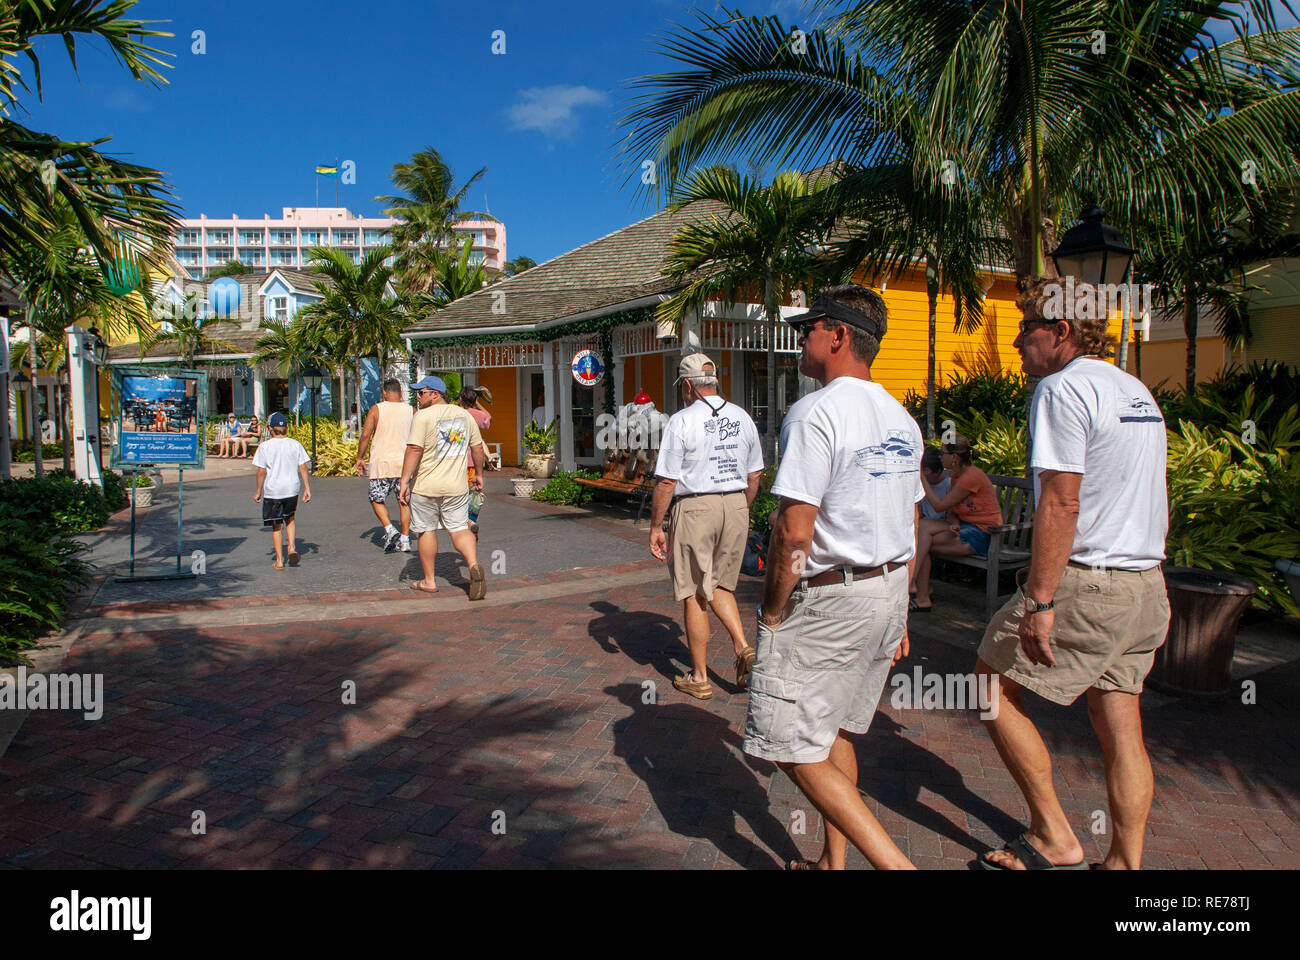 Negozi di lusso dell'Hotel Atlantis. Paradise Island, a Nassau, New Providence Island, Bahamas, dei Caraibi. Panorama di Atlantis hotel e Paradise Island. Foto Stock